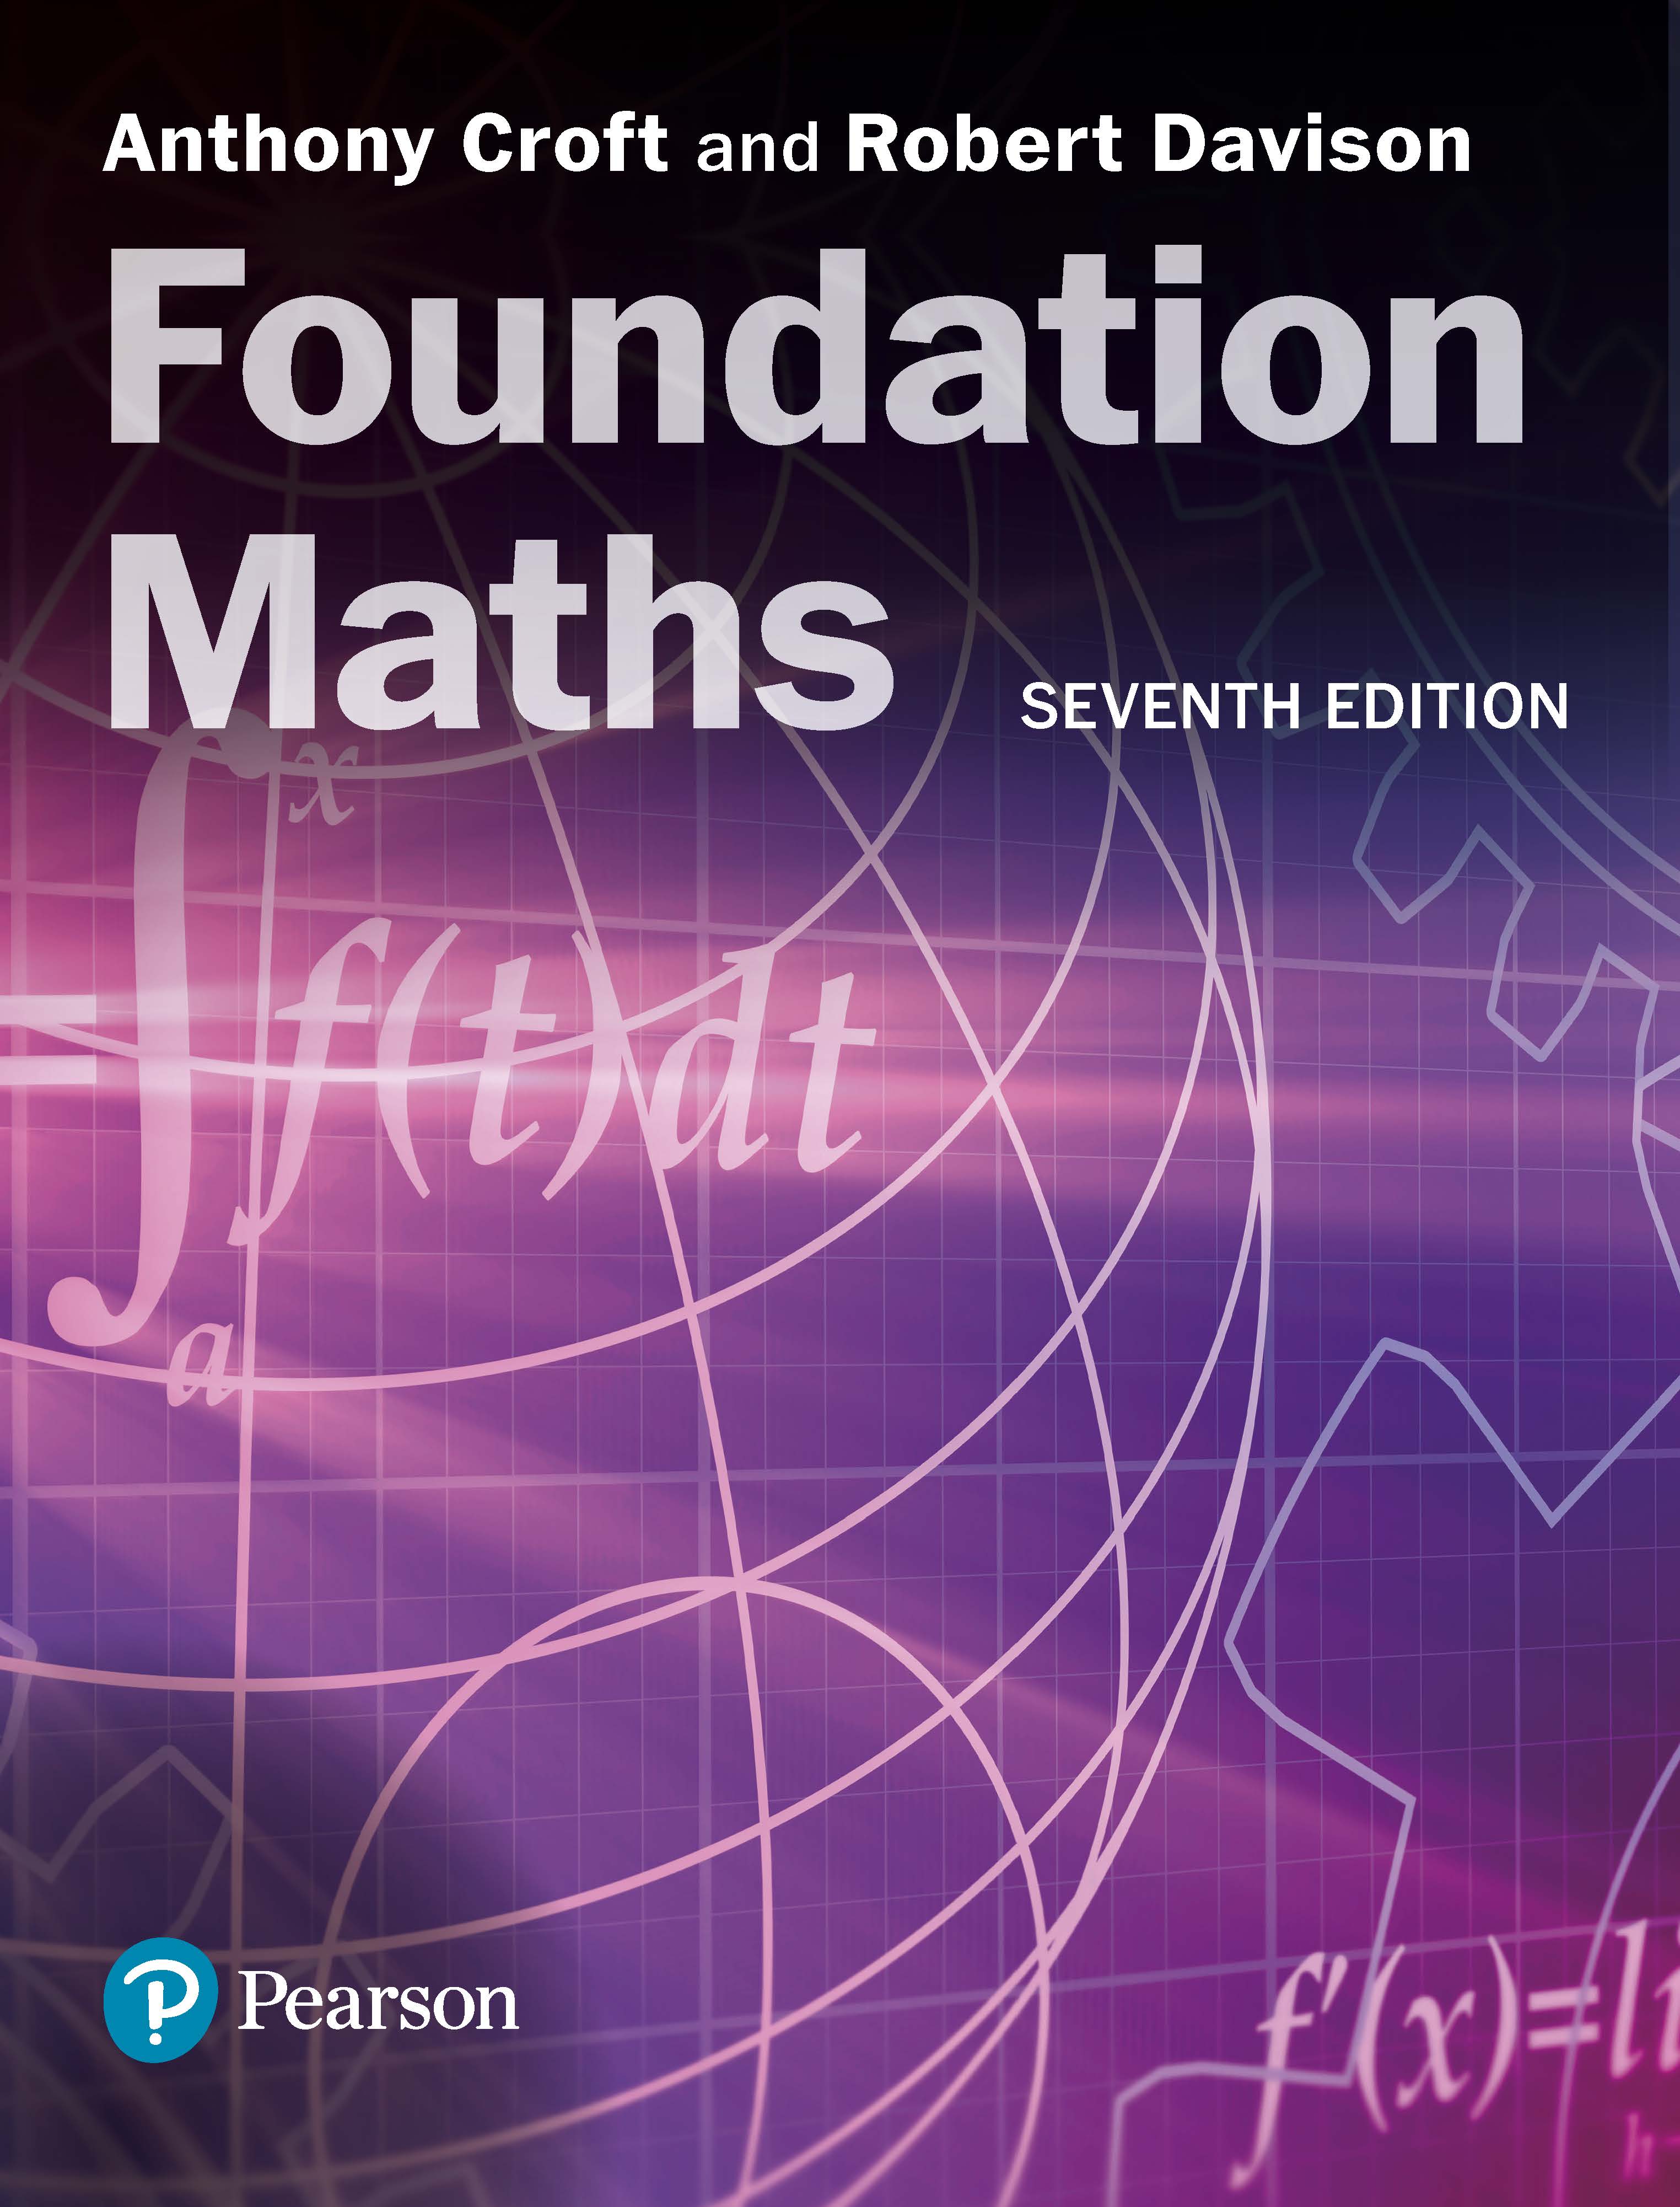 Foundation Maths, 6th edition